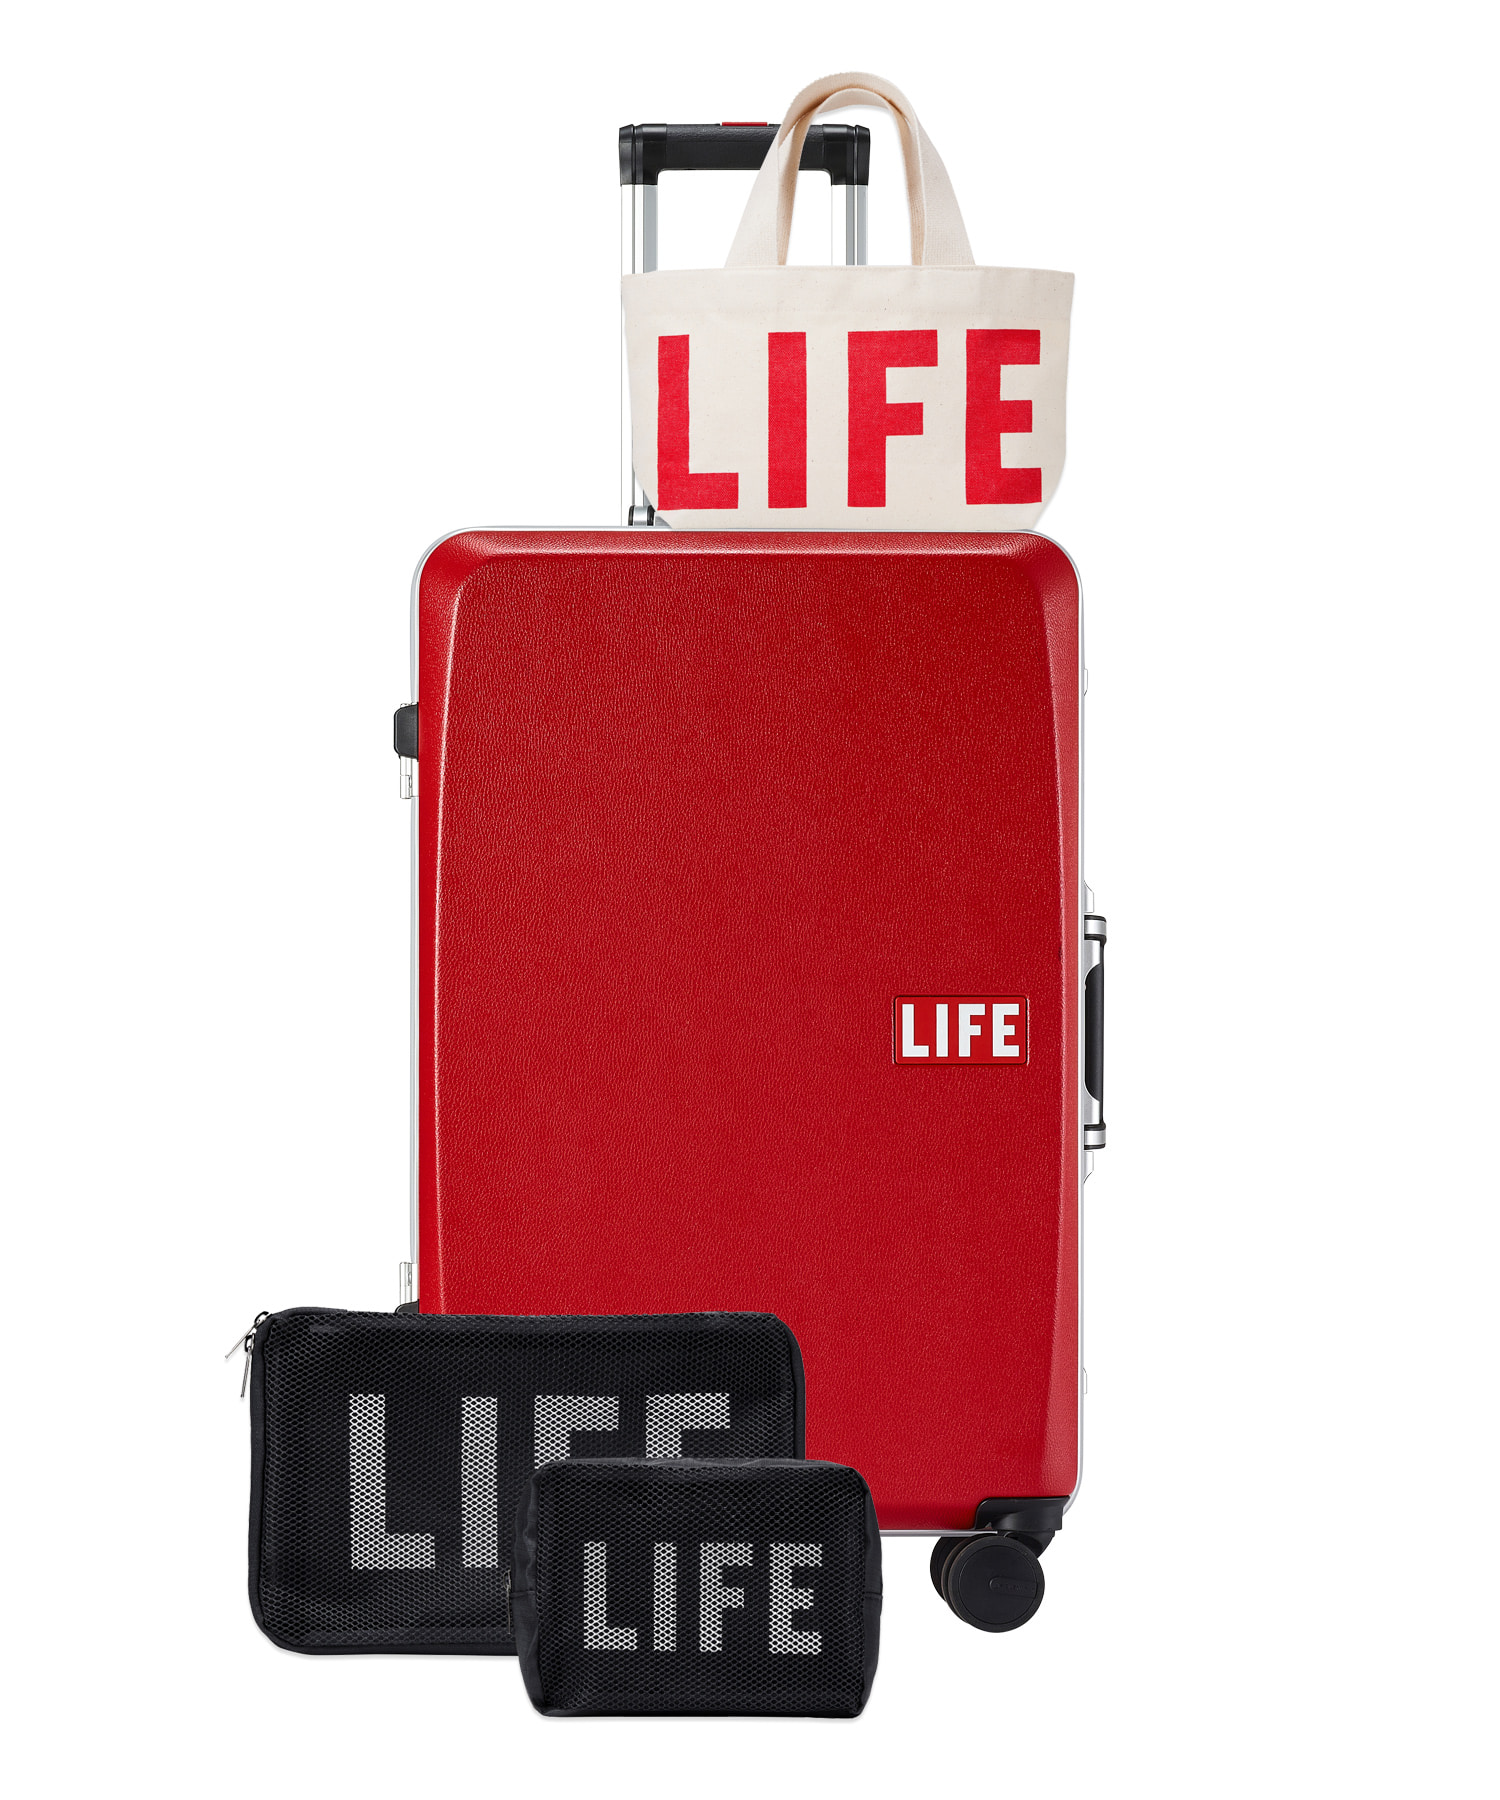 자체브랜드 LIFE CLASSIC LUGGAGE 61L_RED 라이프,LIFE, LIFE ARCHIVE, 일회용 카메라, 카메라